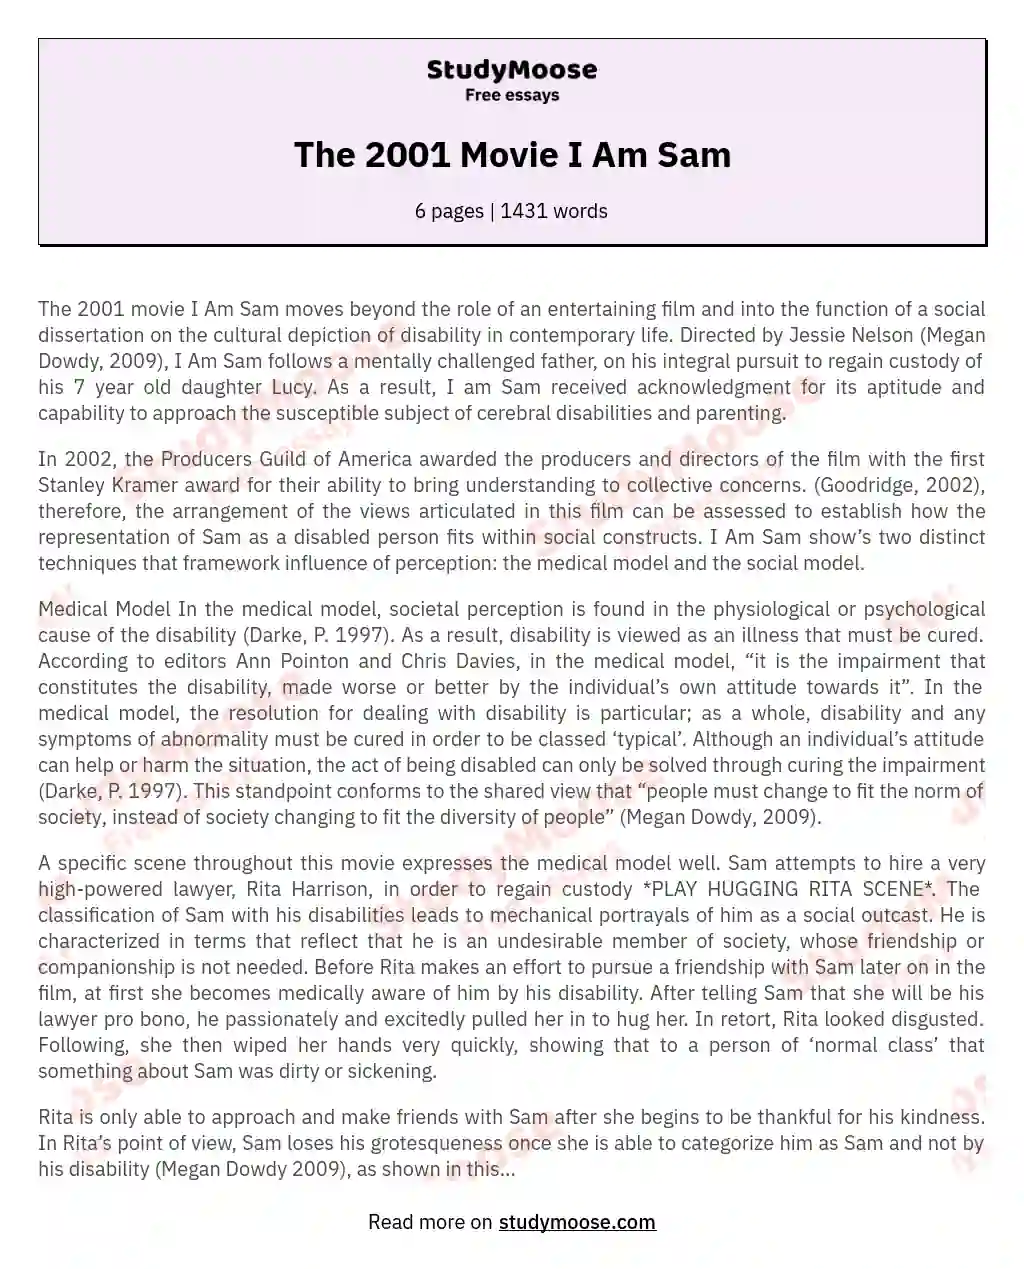 The 2001 Movie I Am Sam essay